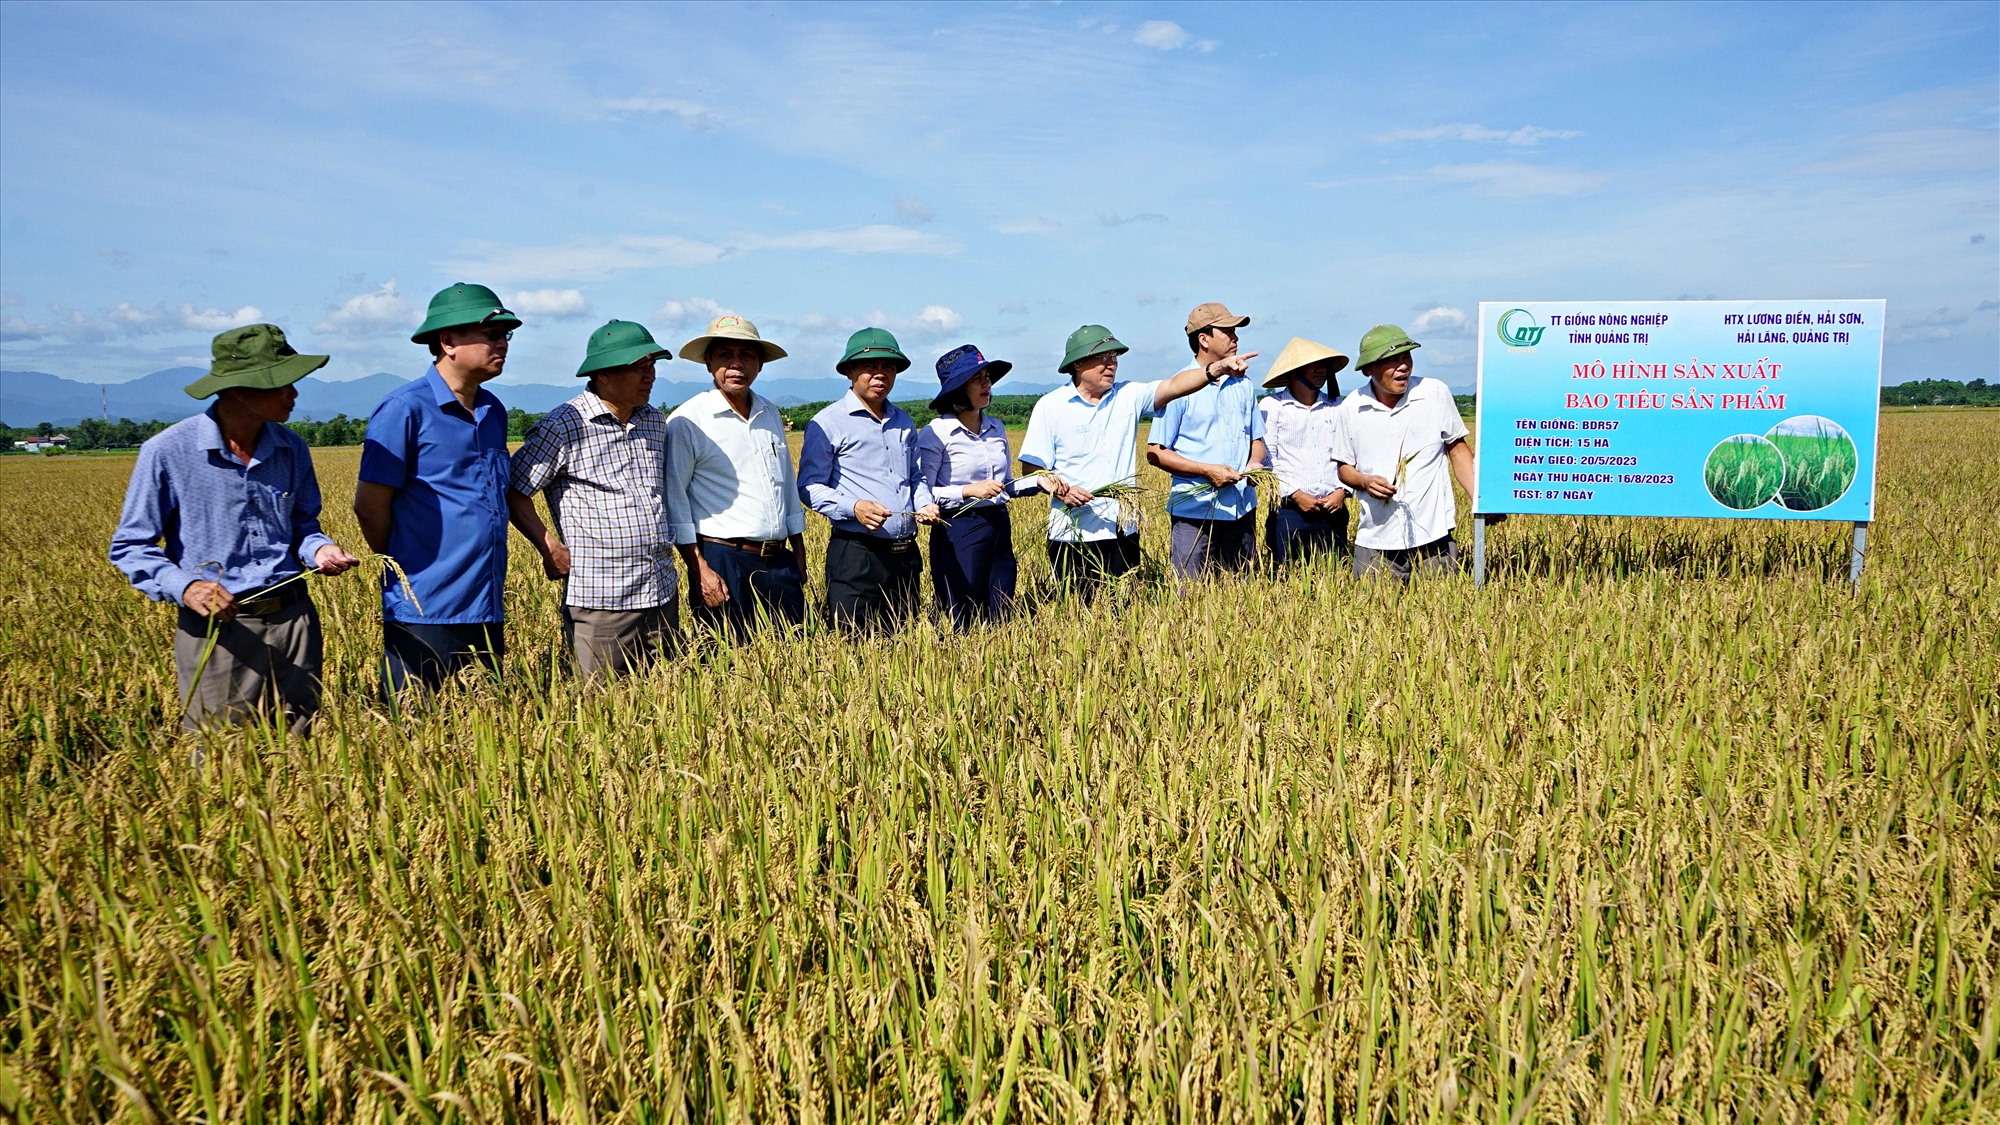 Phó Chủ tịch Thường trực UBND tỉnh Hà Sỹ Đồng kiểm tra mô hình sản xuất bao tiêu sản phẩm giống lúa BDR57 giữa Trung tâm Giống nông nghiệp Quảng Trị và Hợp tác xã Lương Điền - Ảnh: L.A